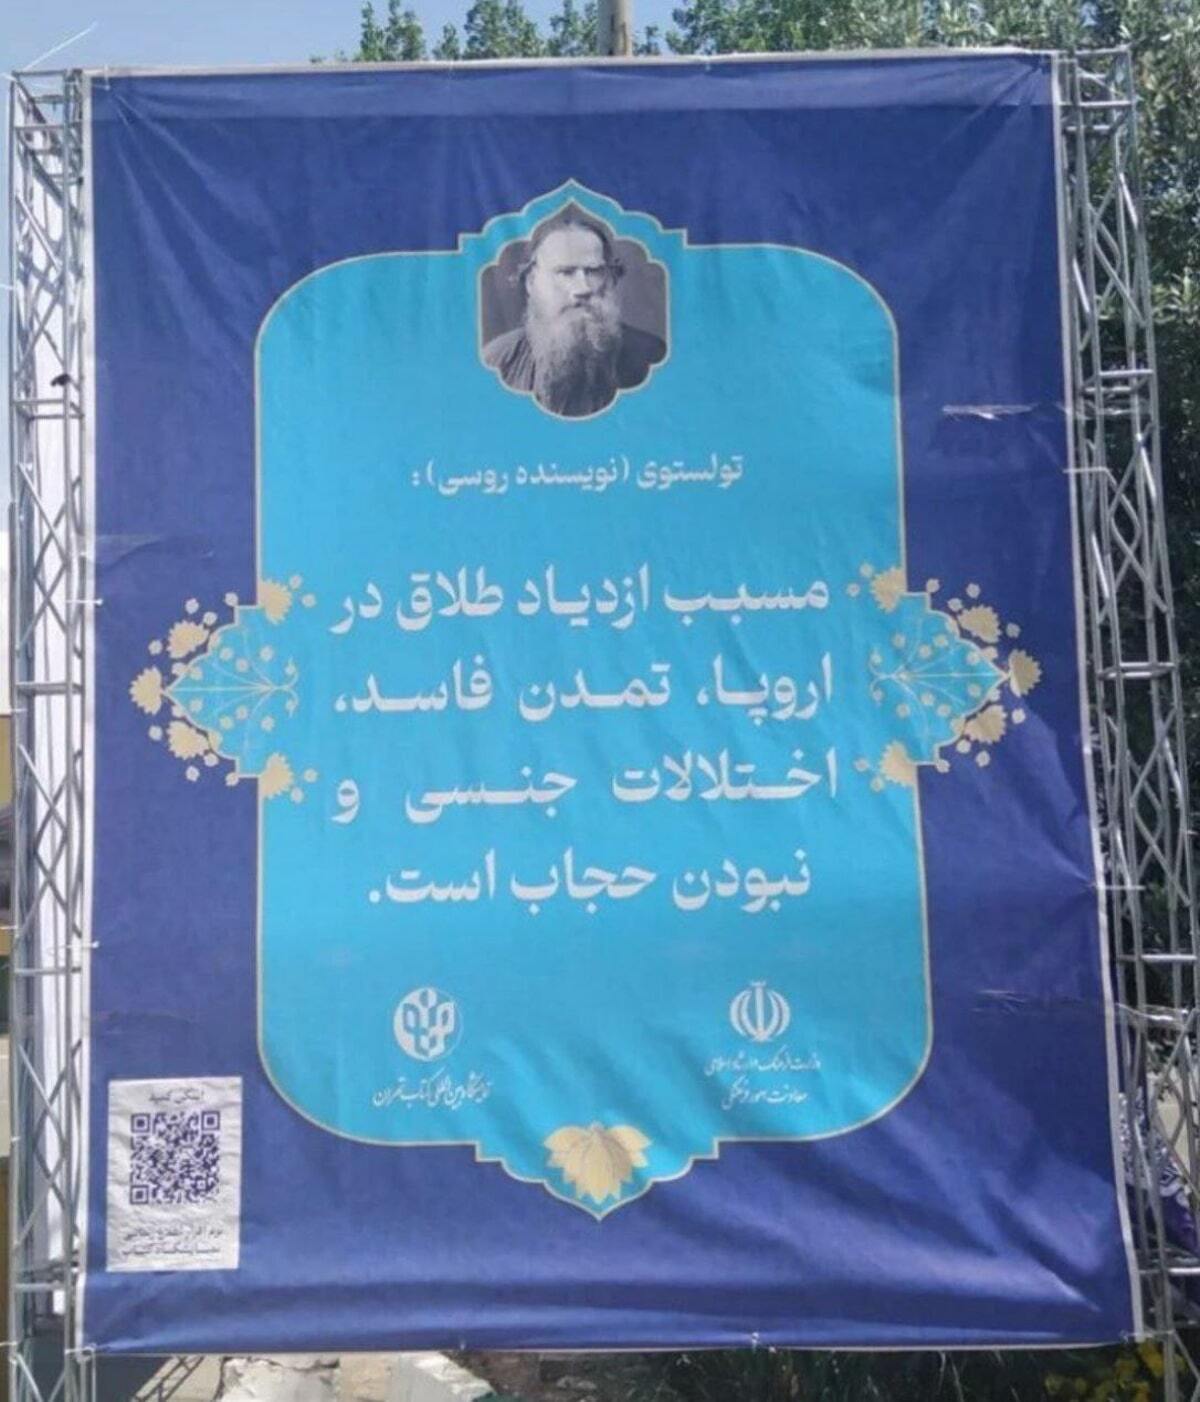 نصب بنرهای بحث برانگیز از تولستوی و ویکتور هوگو درباره حجاب در سطح تهران